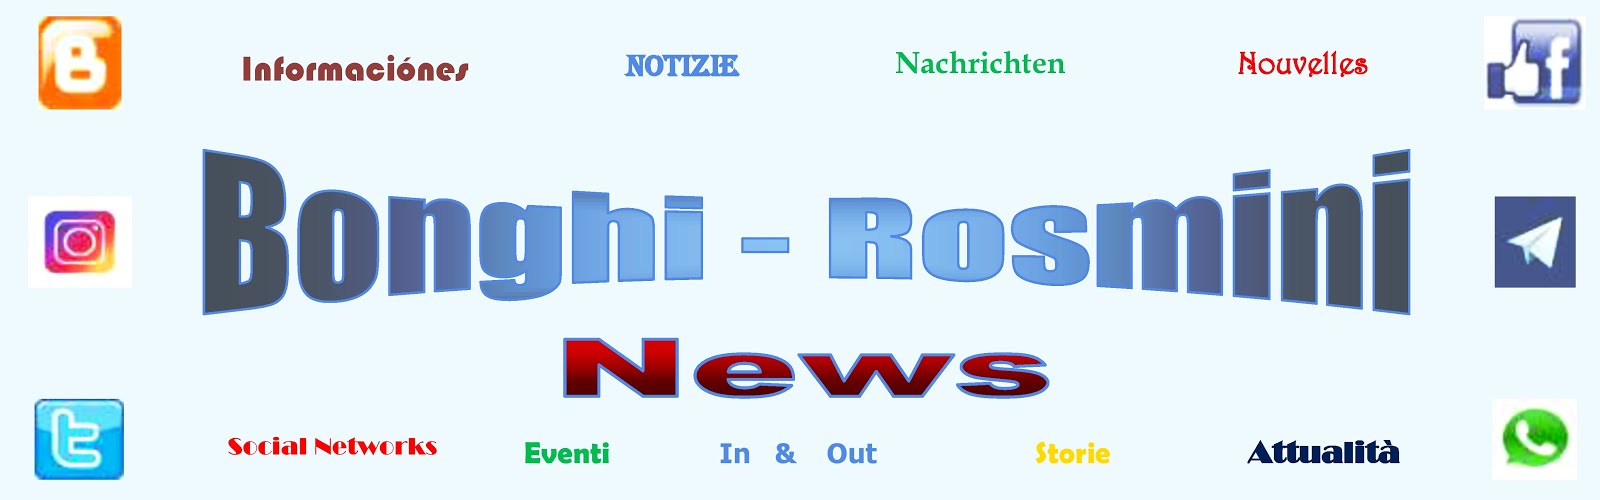 Bonghi-Rosmini news